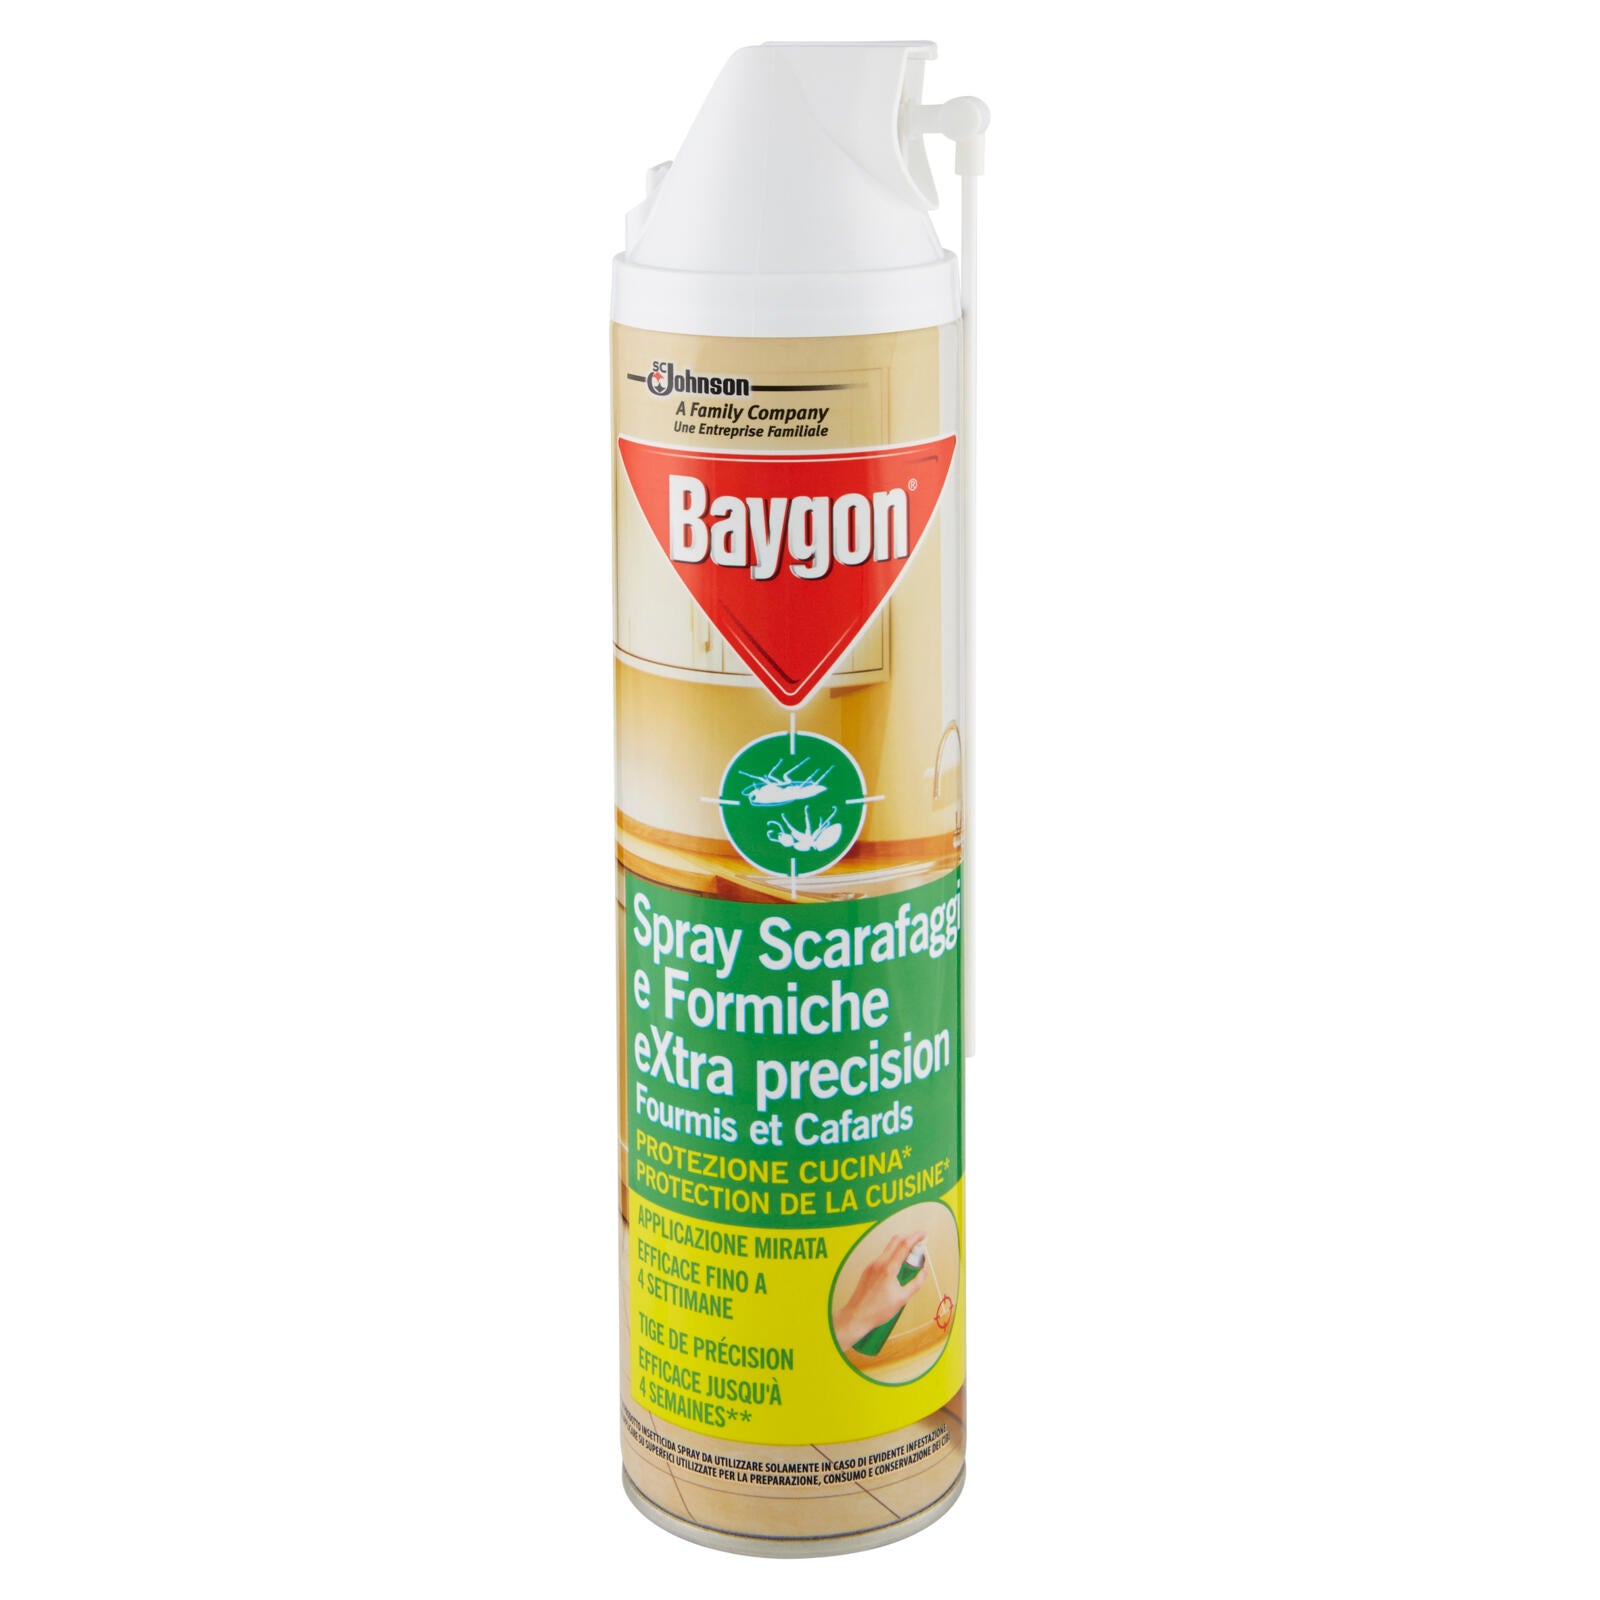 Baygon Spray Extra Precision, Insetticida contro Scarafaggi e Formiche, 1 Confezione da 400 ml